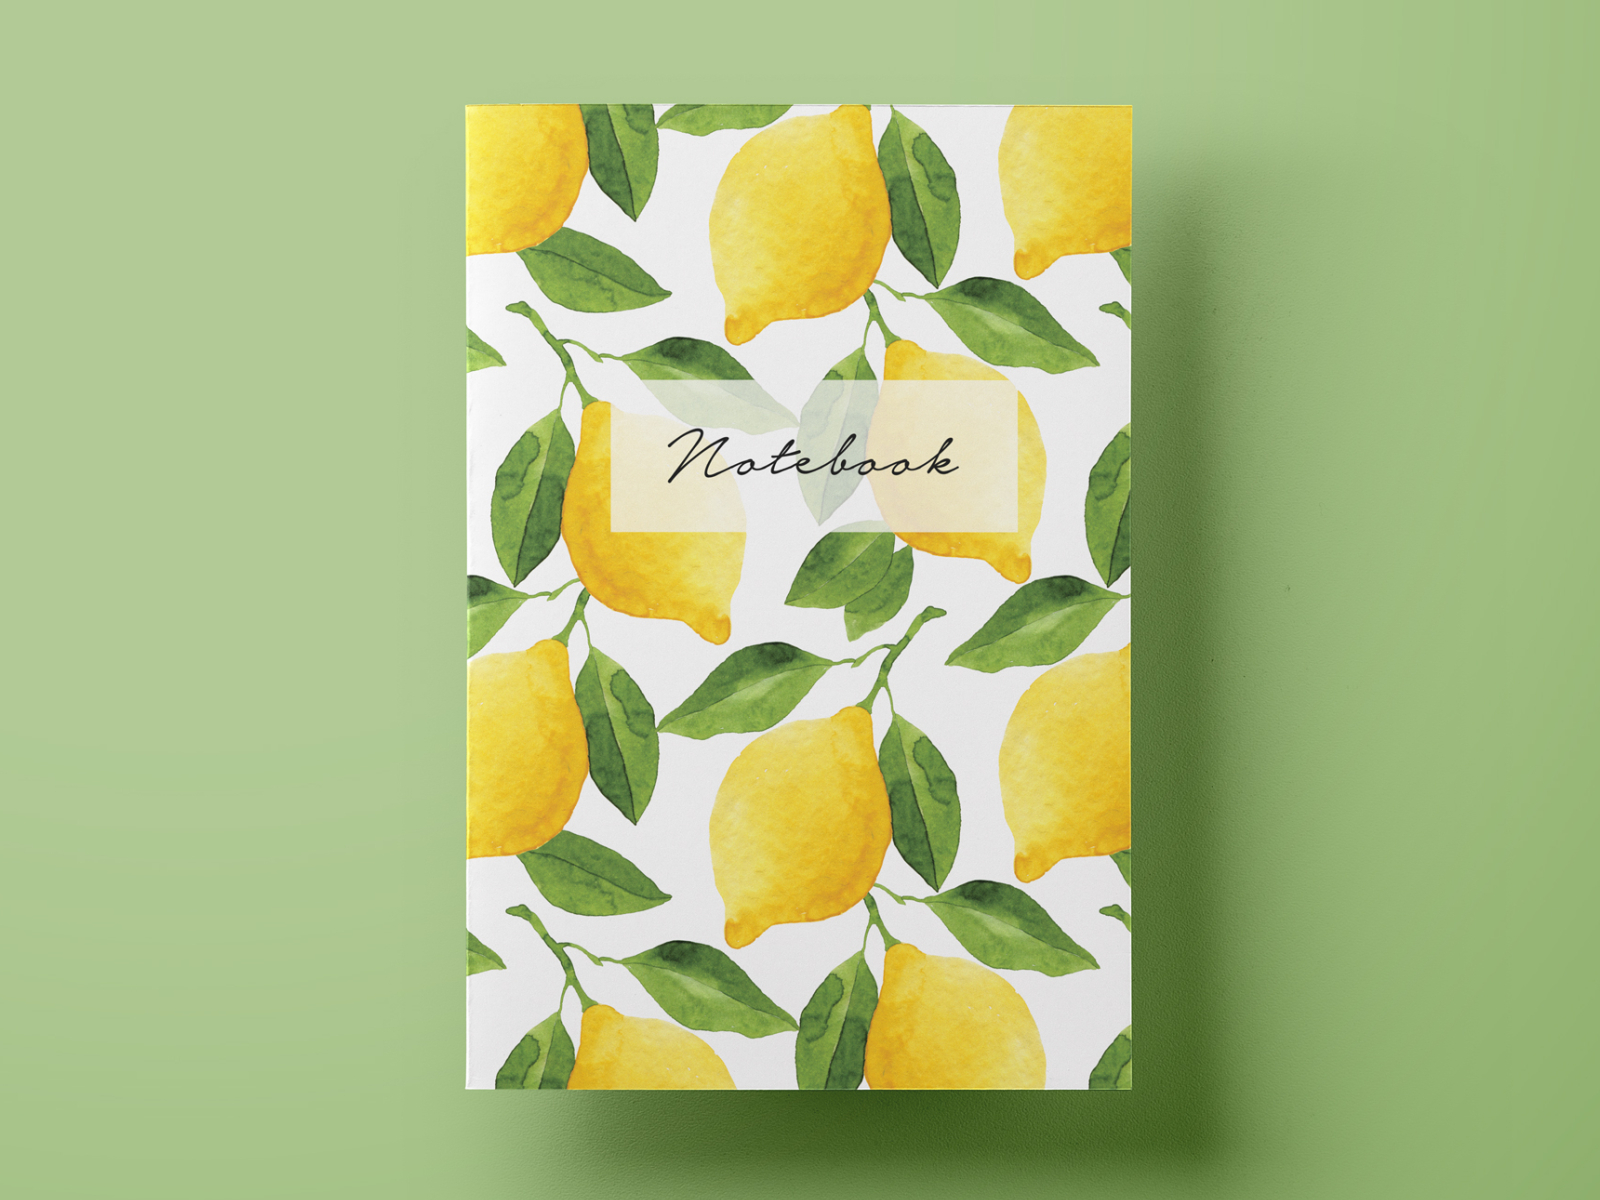 Watercolor Lemons Notebook By Helga Wigandt On Dribbble